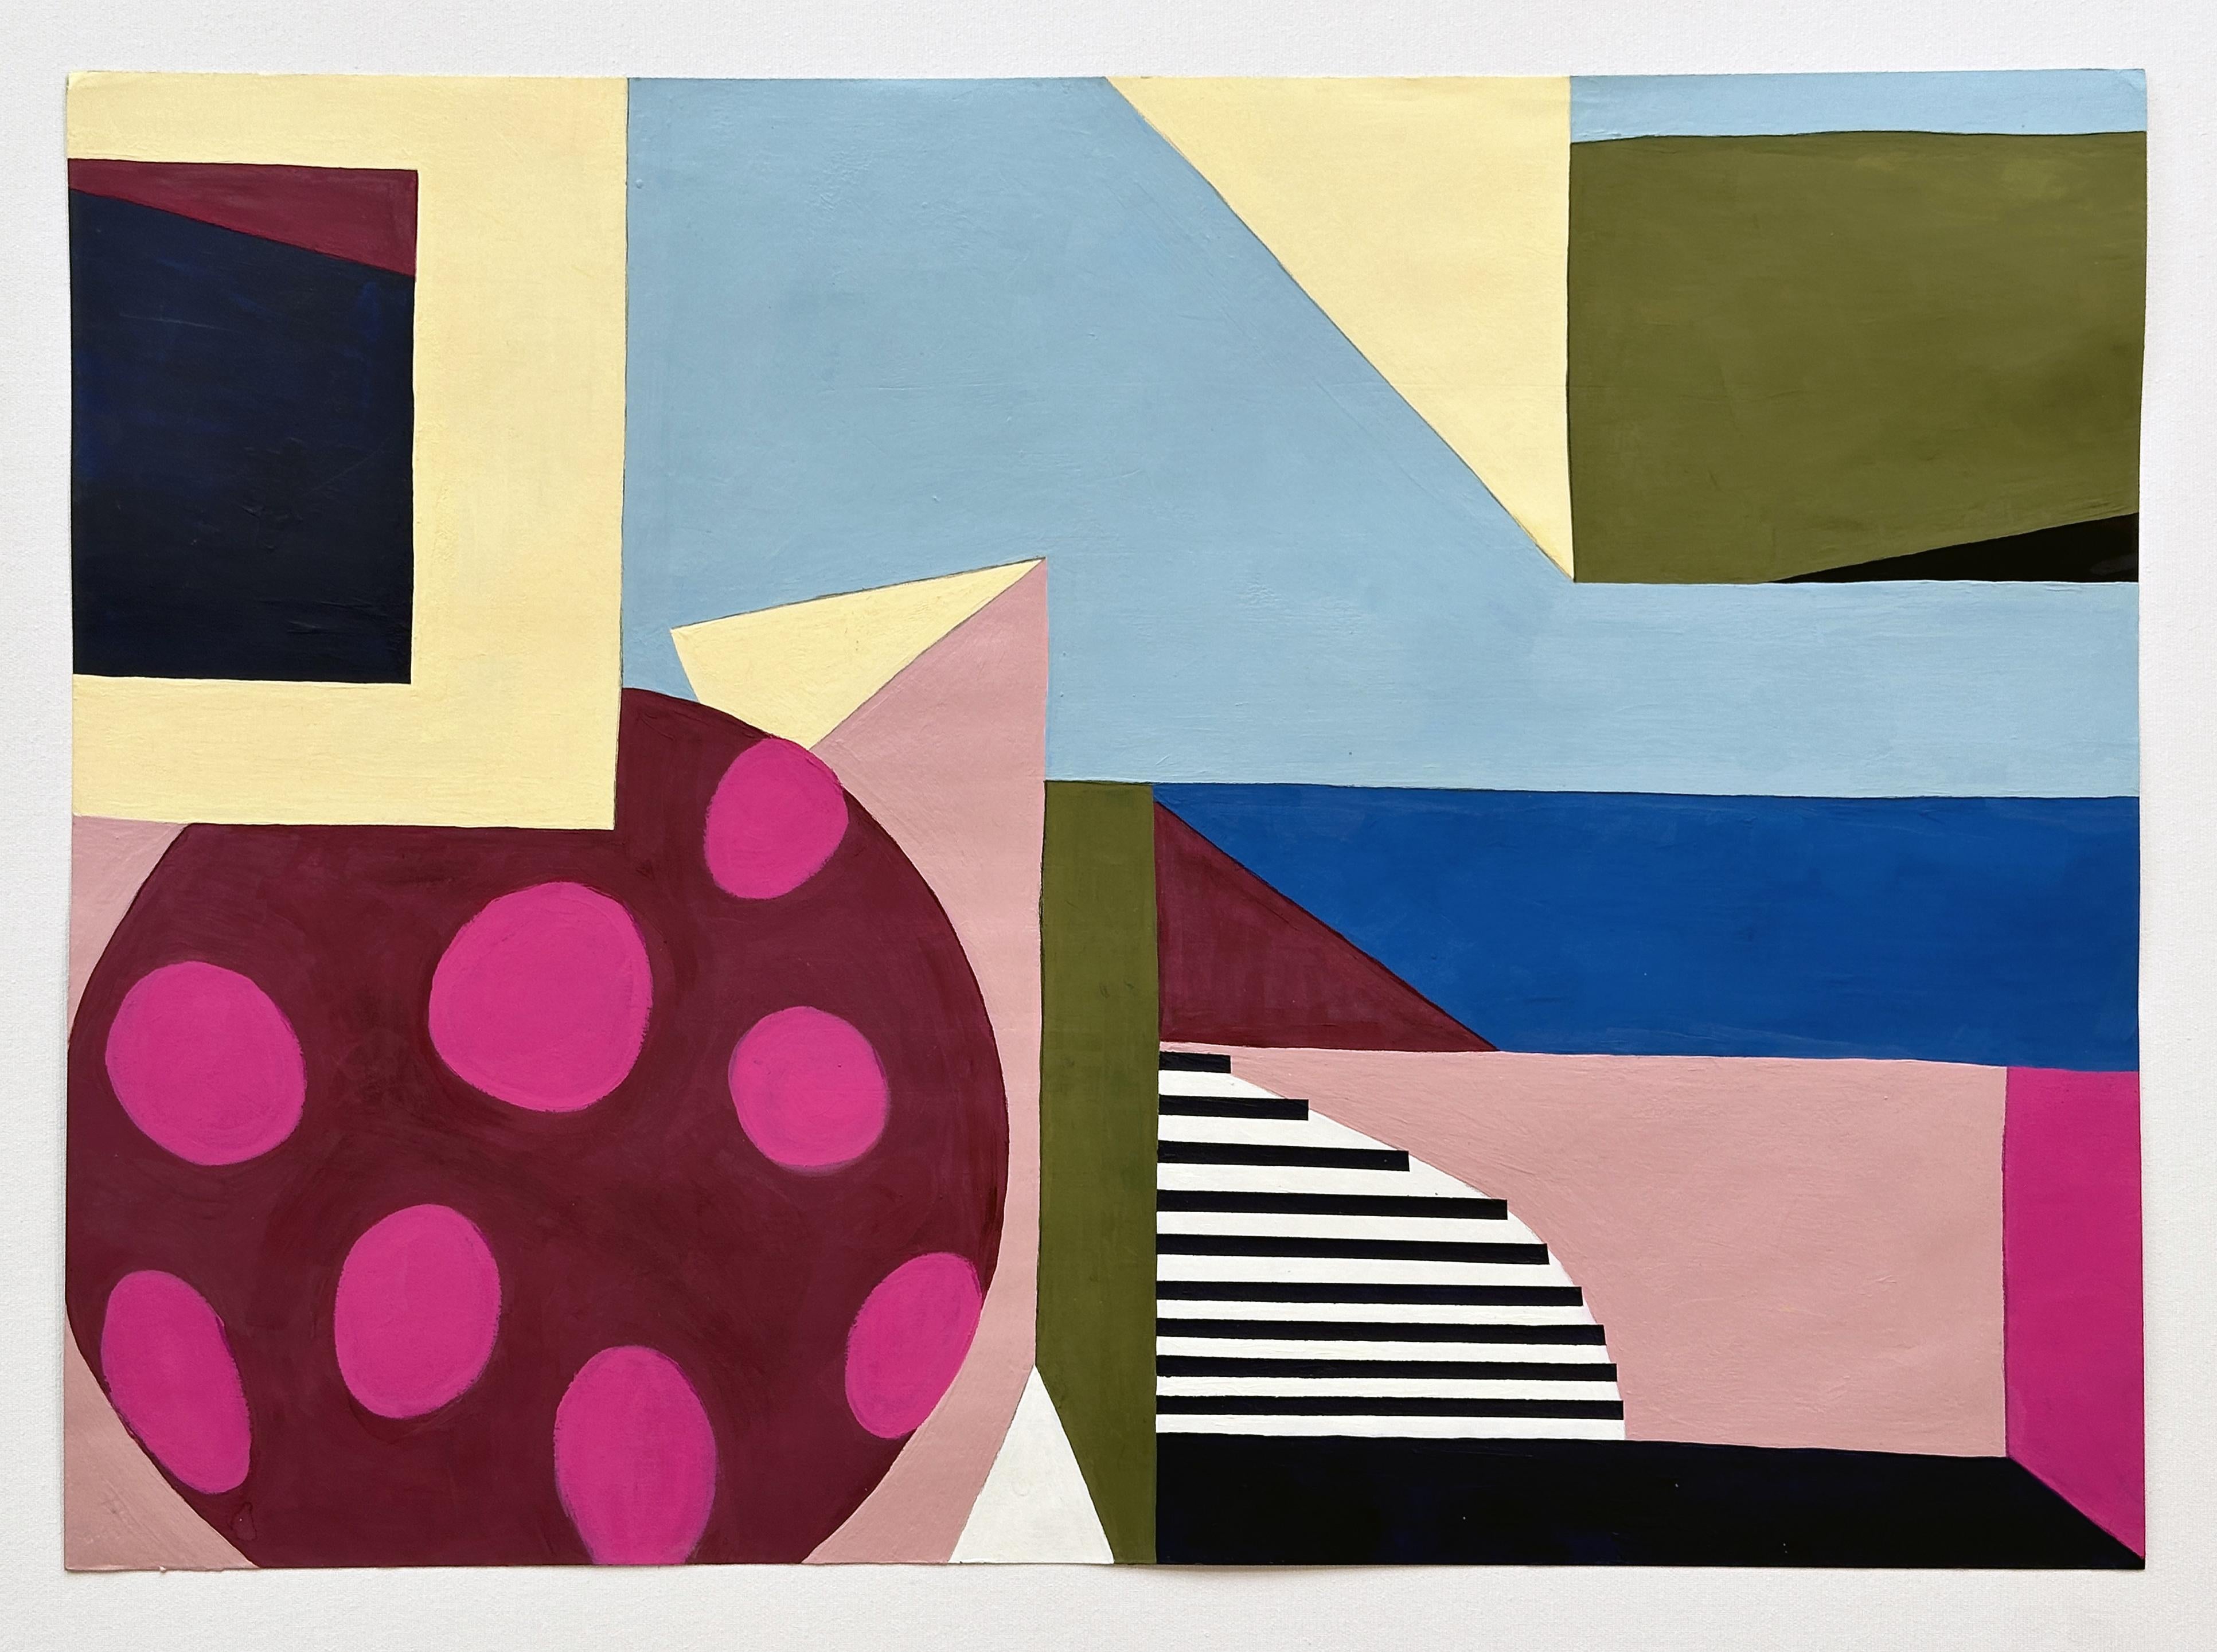 Fait partie d'une série de trois peintures abstraites réalisées en 2023 par Amanda Andersen, avec ses initiales au dos. 
Un ensemble de formes géométriques libres : rectangles, triangles et cercles dialoguent les uns avec les autres dans un langage